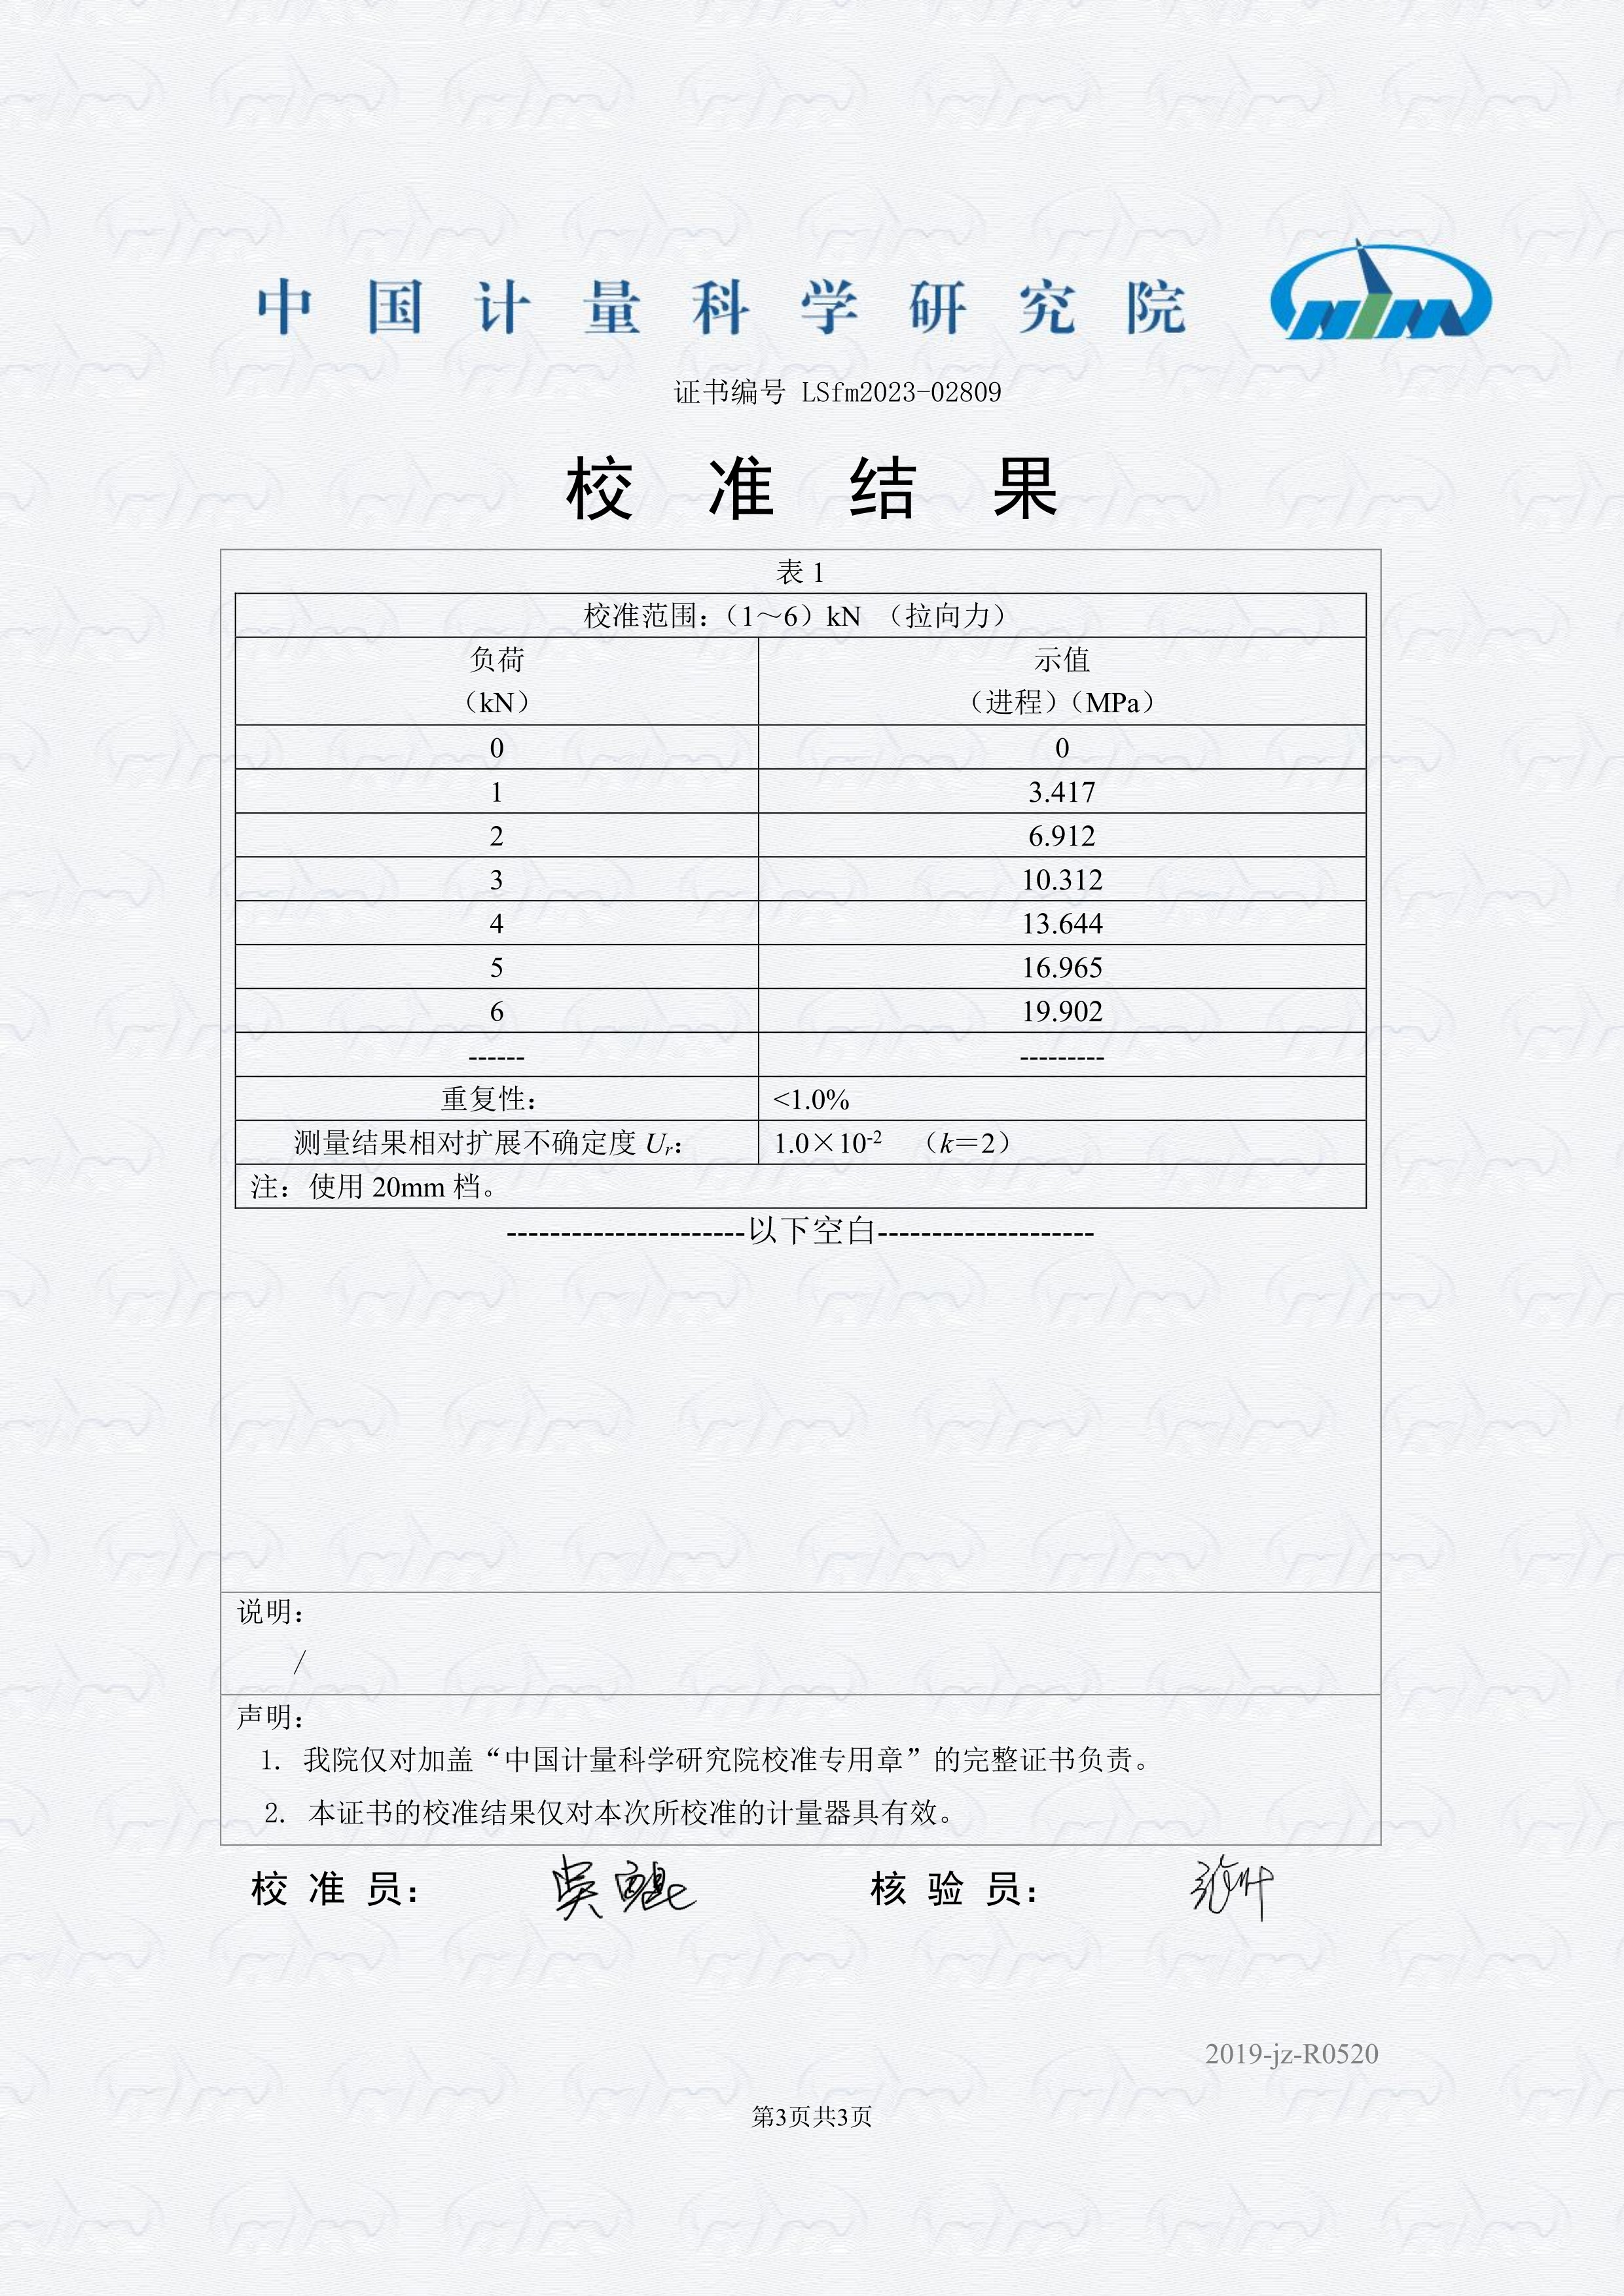 全自动附着力测试仪/自动附着力检测仪通过中国计量院计量检定(图3)